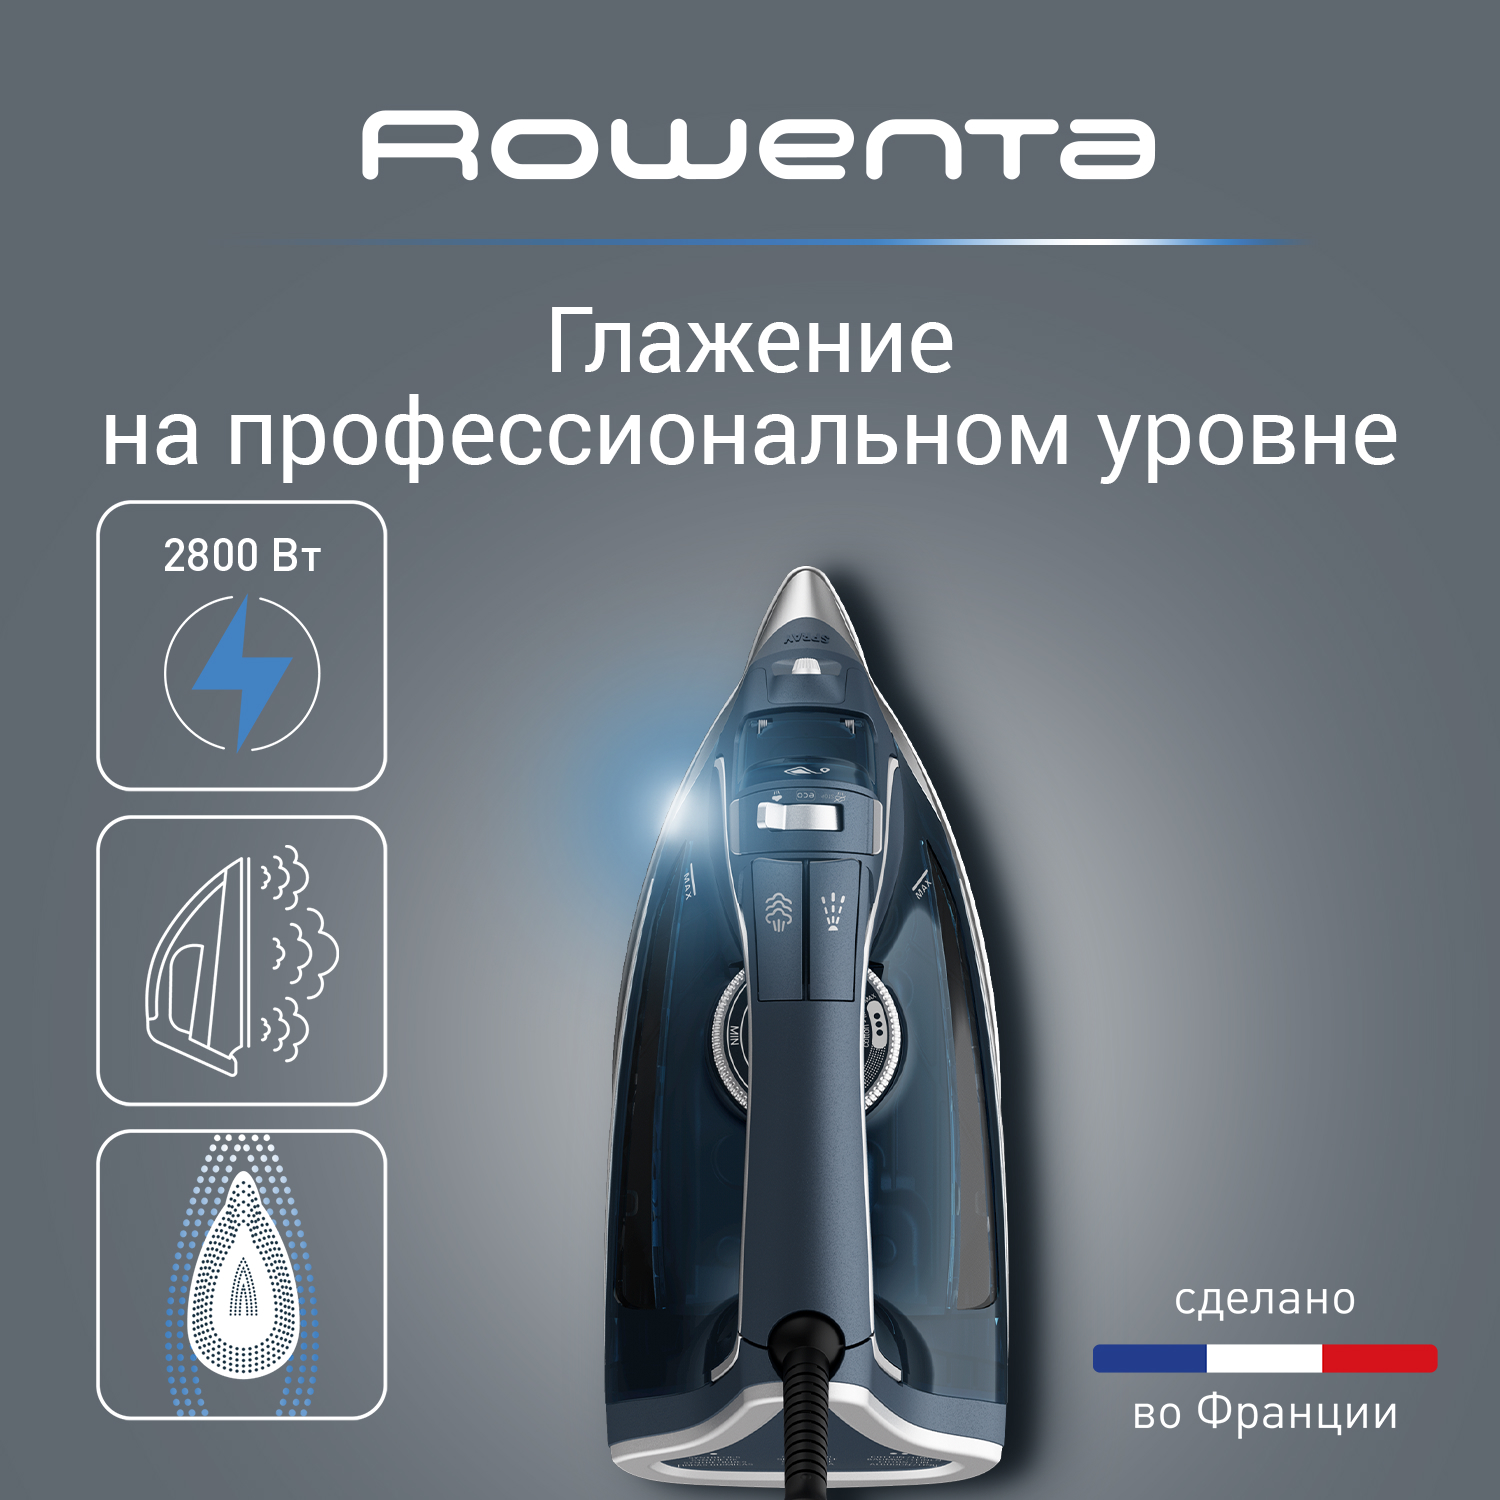 Утюг Rowenta DW8221D1 синий, купить в Москве, цены в интернет-магазинах на Мегамаркет